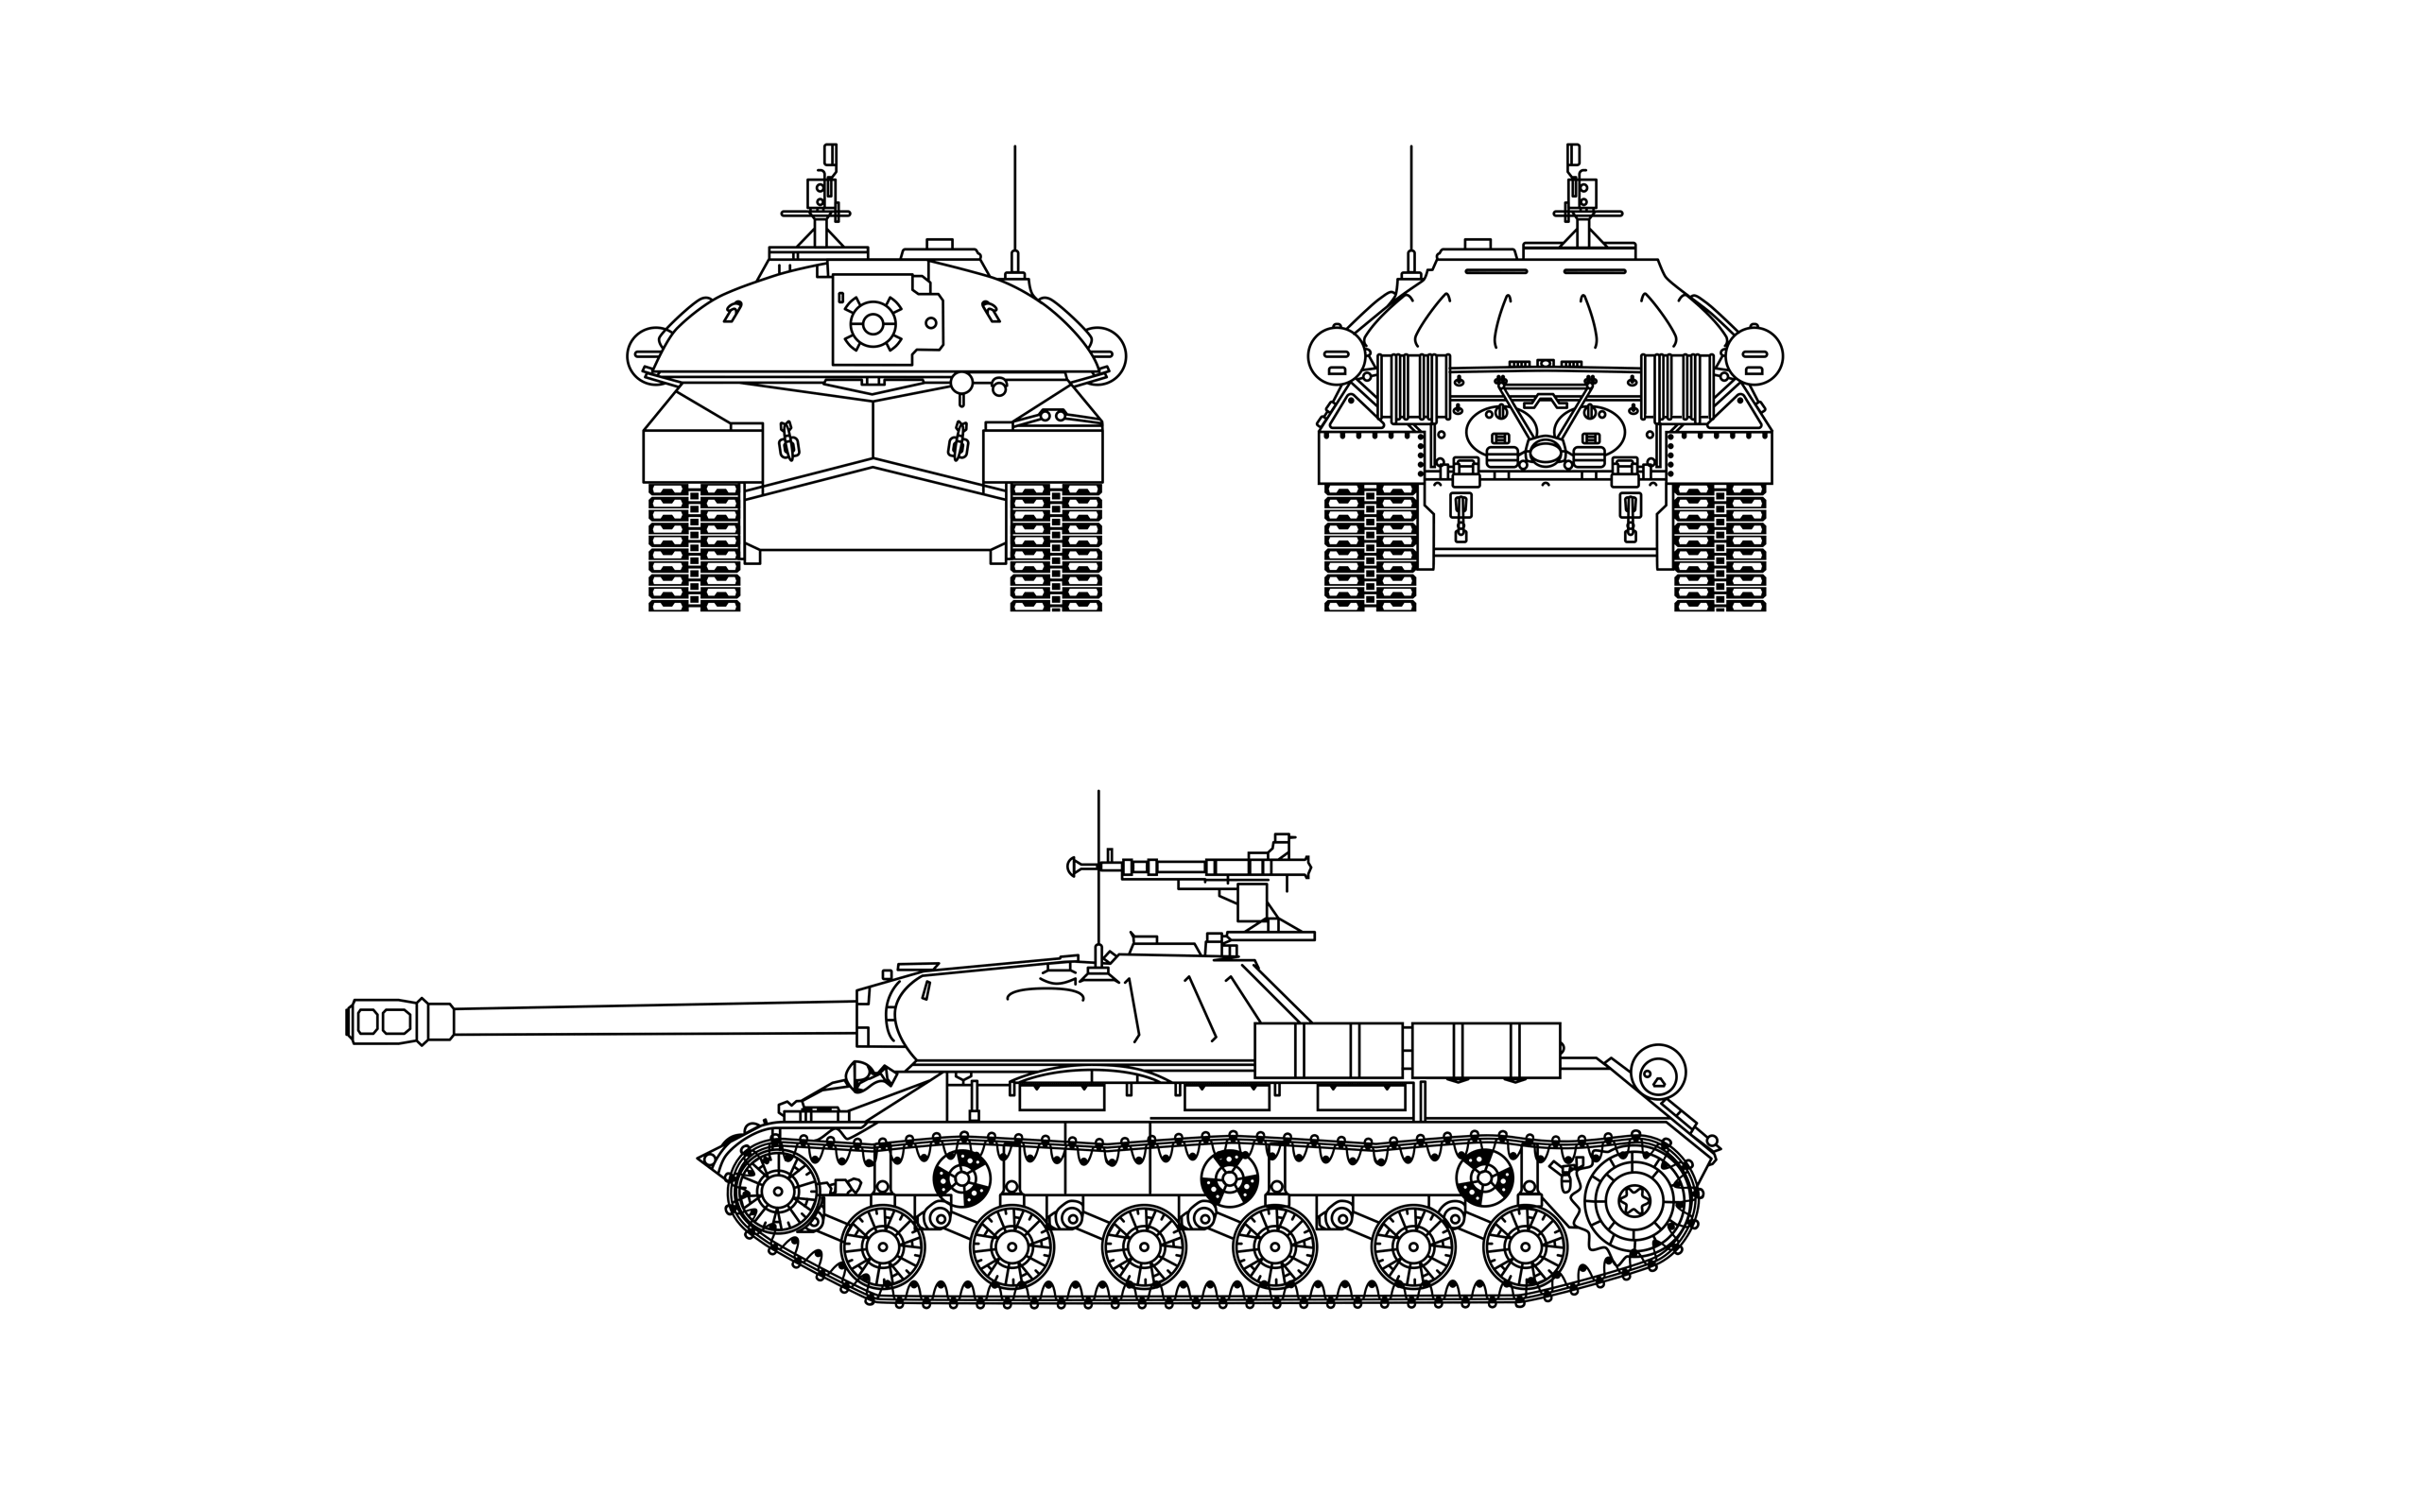 強戦車 Is 3 一般ニュース ニュース World Of Tanks World Of Tanks